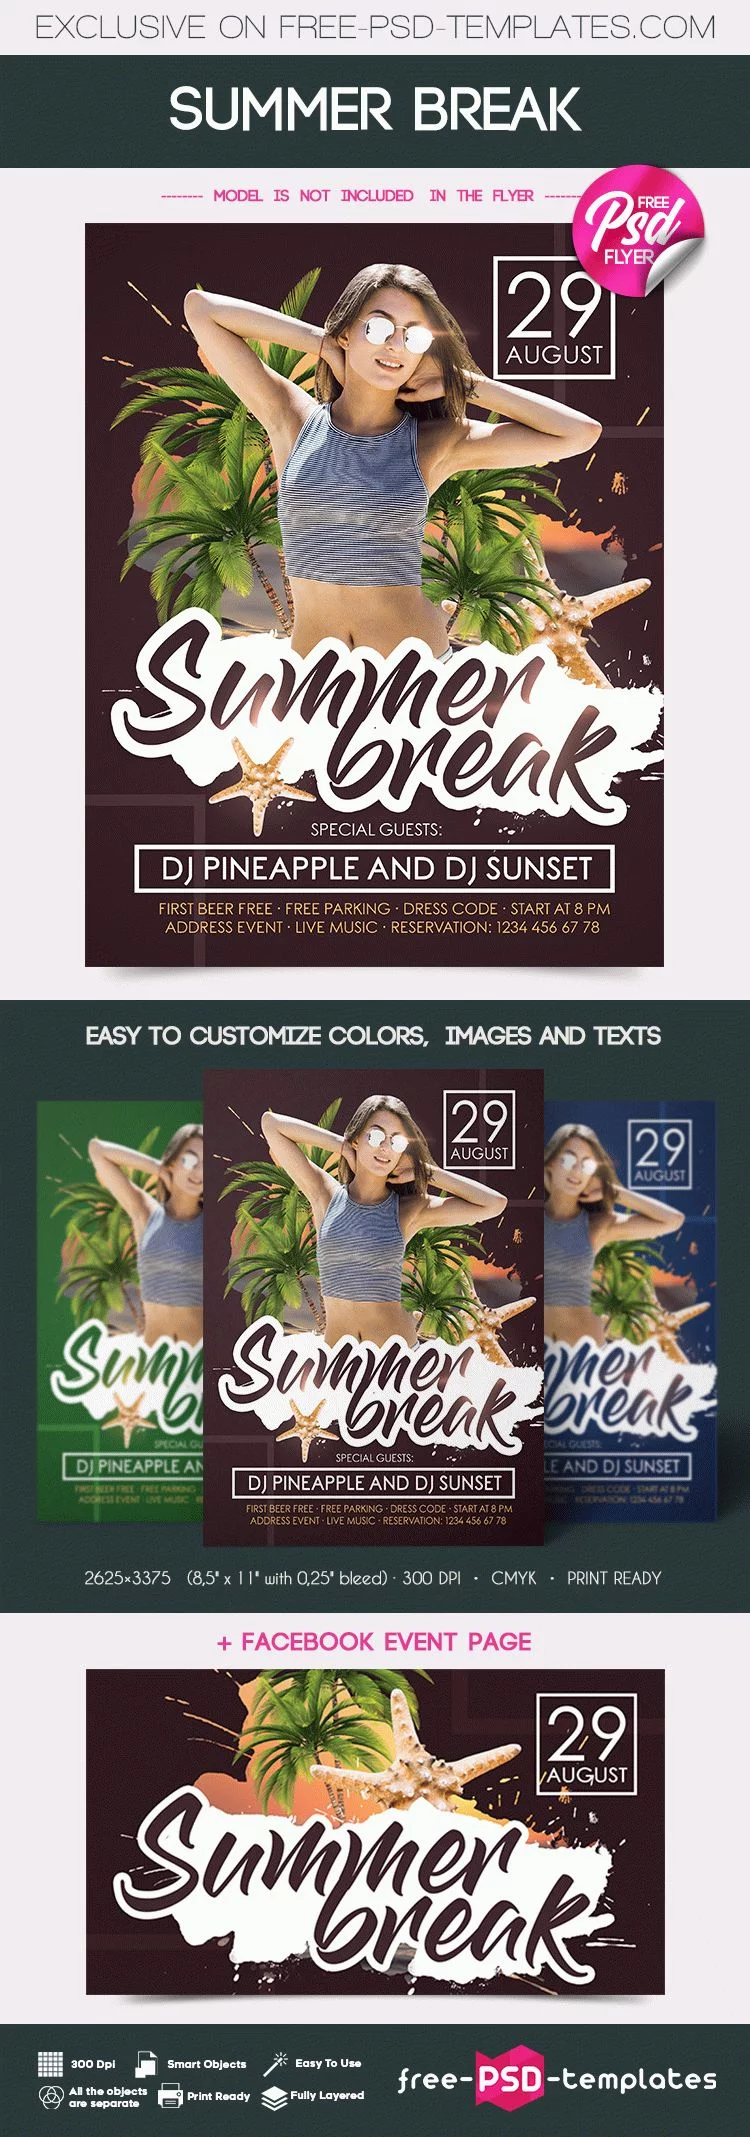 Free Summer Break Flyer in PSD